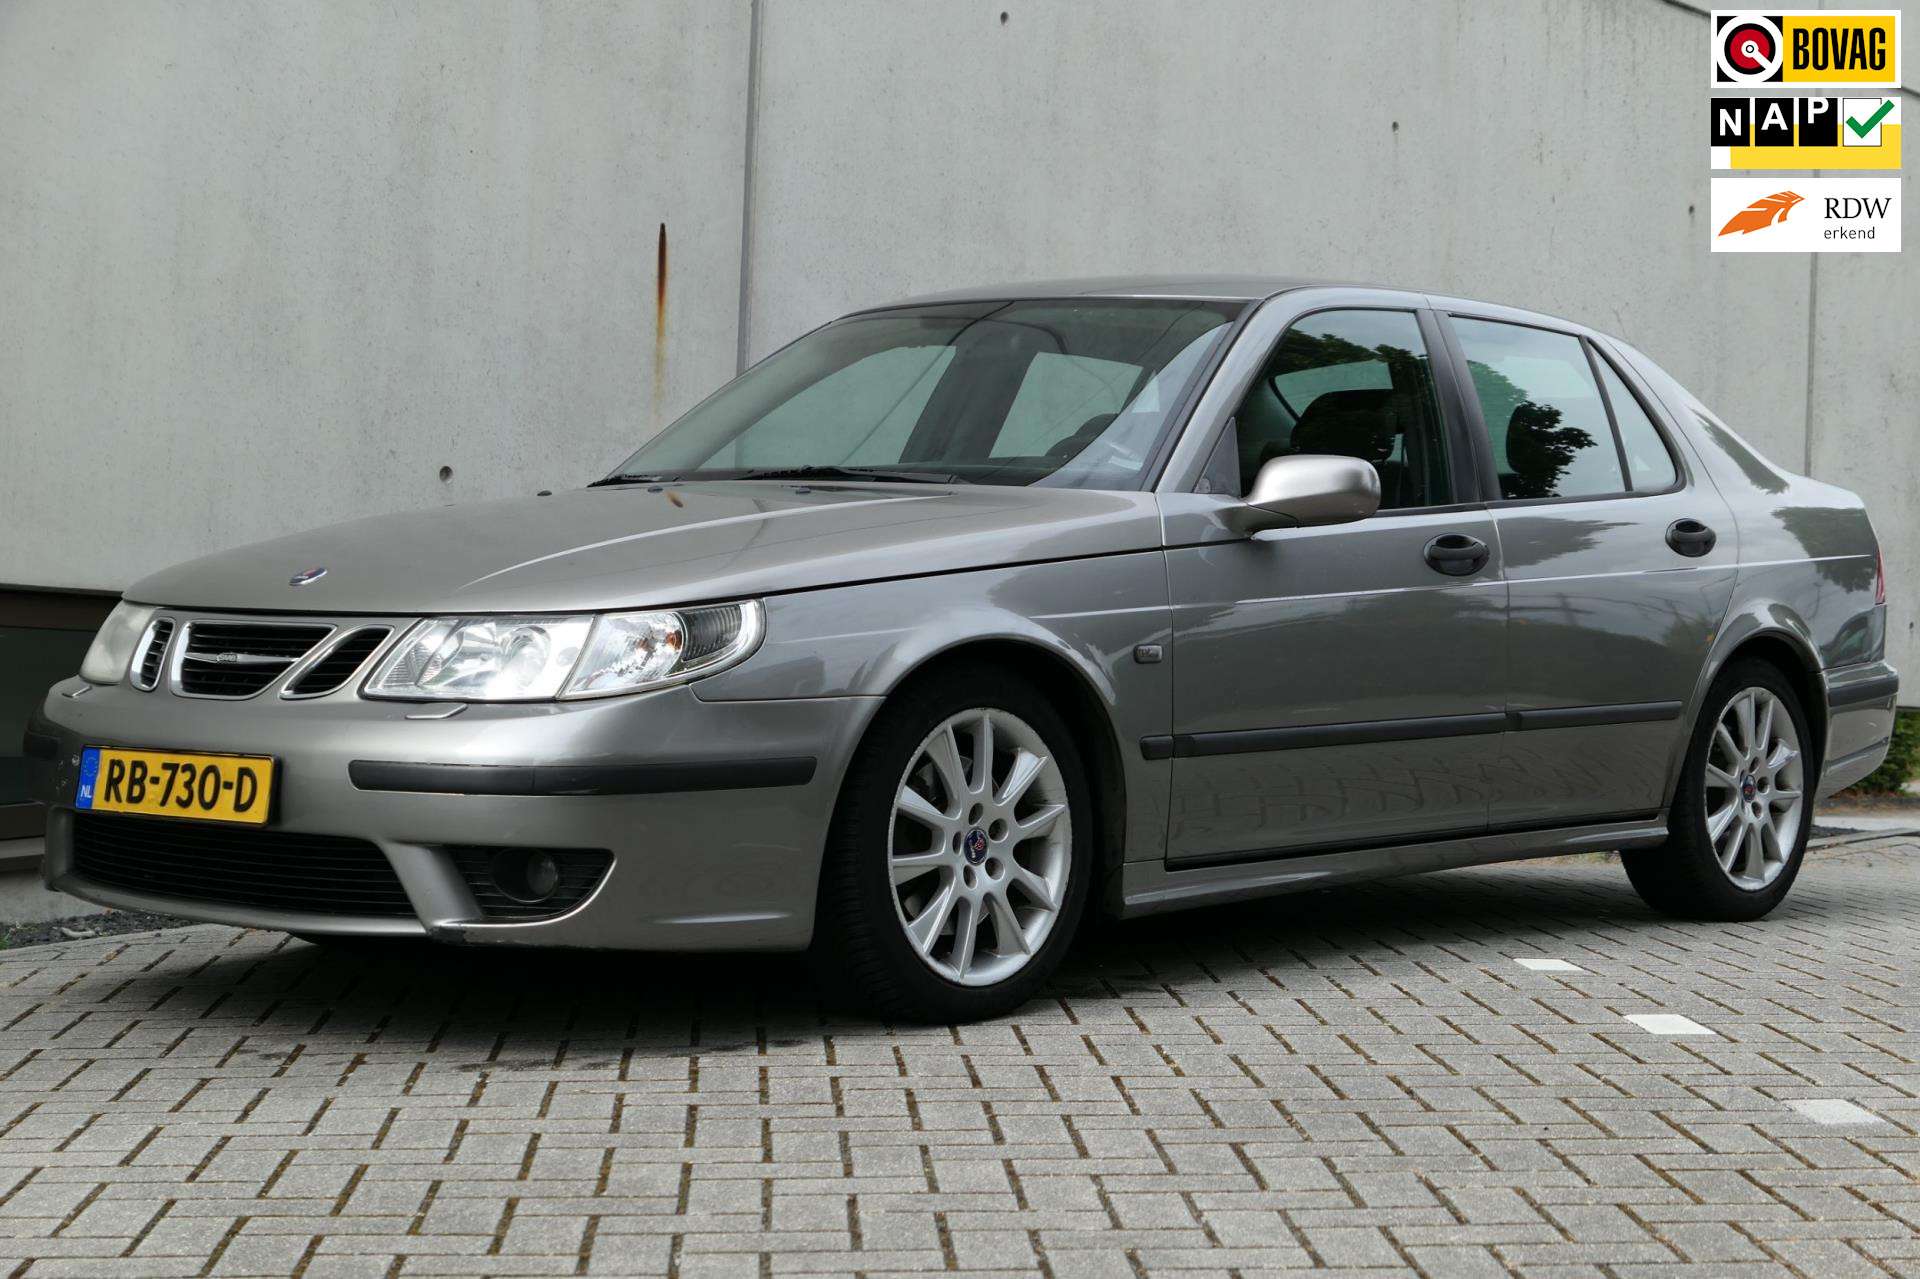 Saab 9-5 Sedan in Grey used in ABCOUDE for € 2,940.-